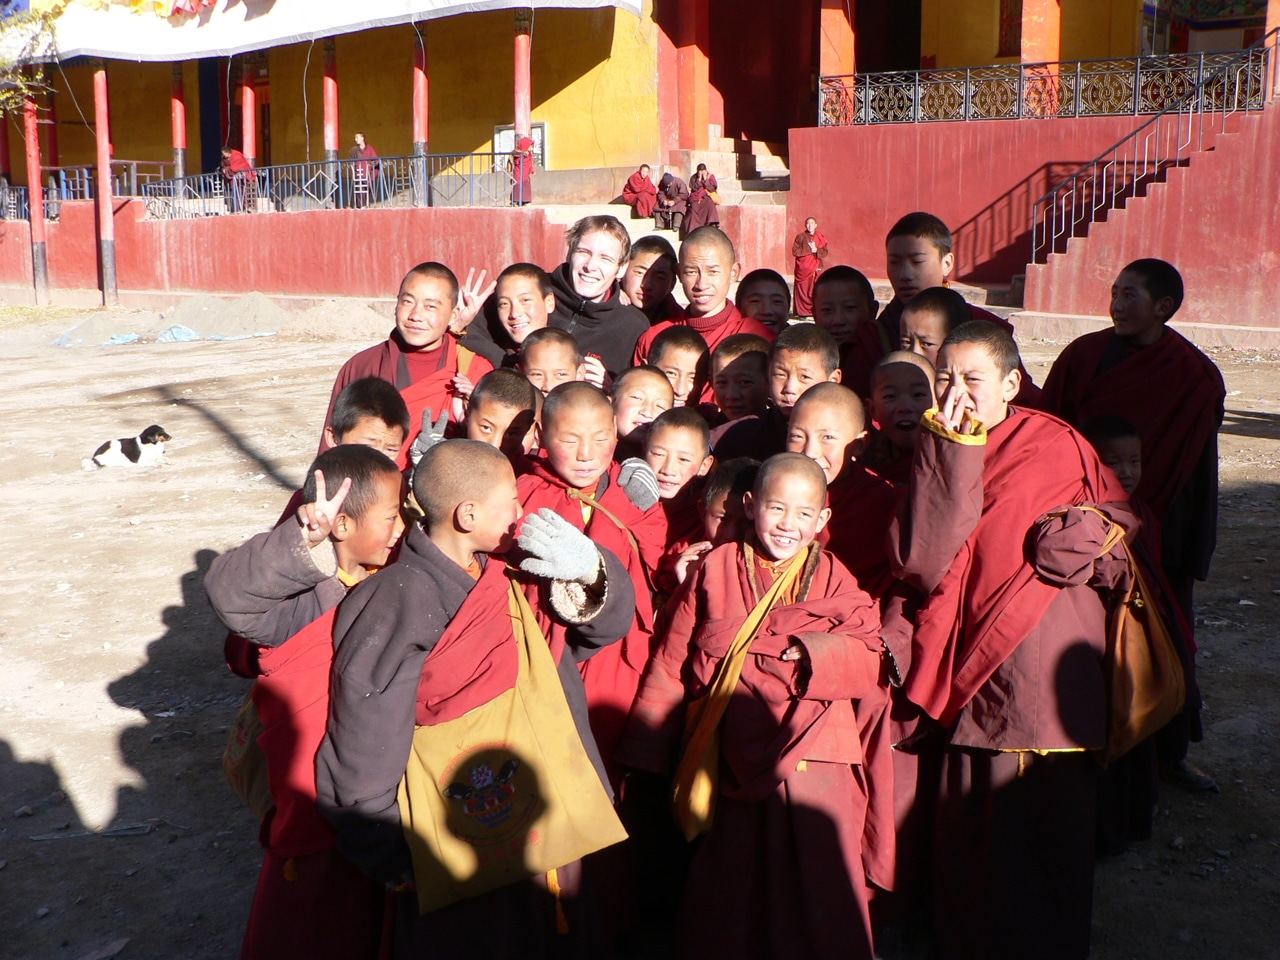 Fellow Dan Green with students in Tibet